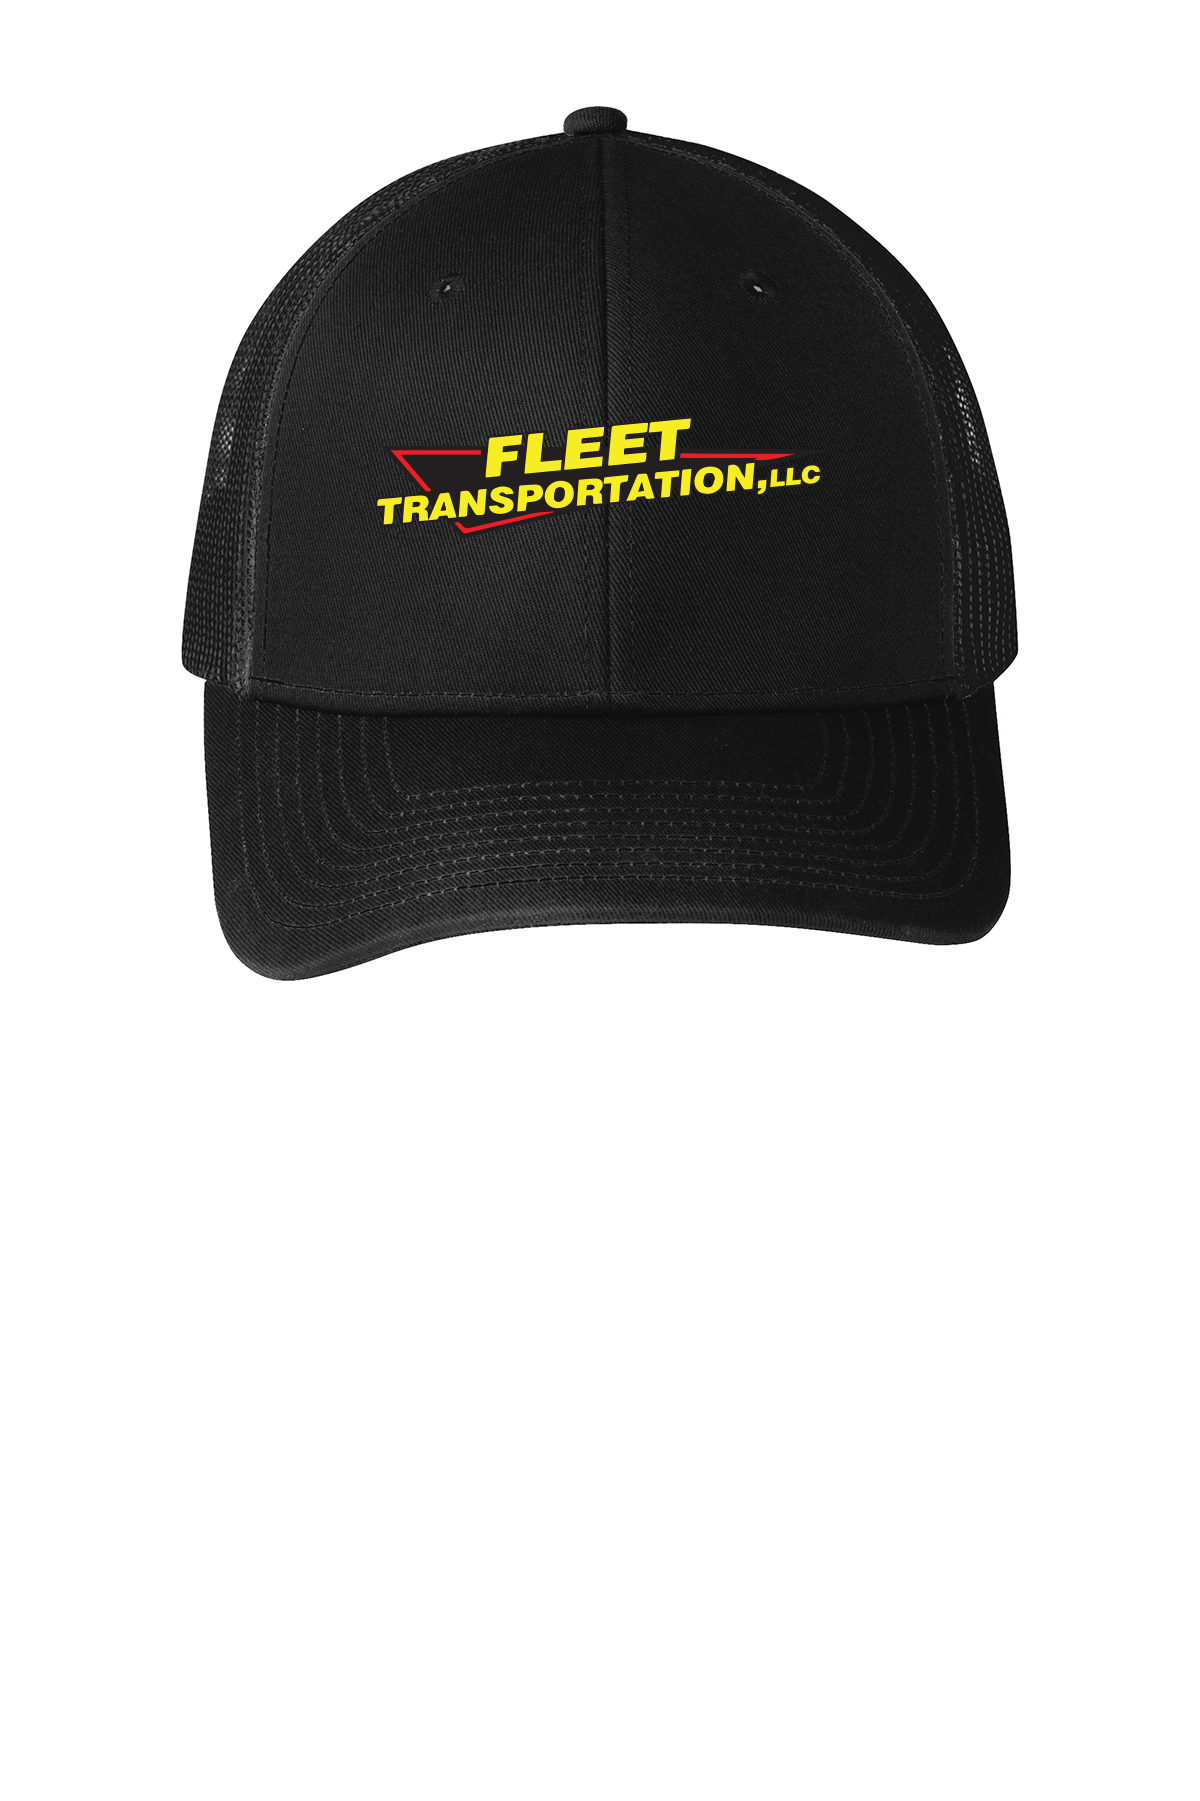 Fleet Transportation Snapback Trucker Cap